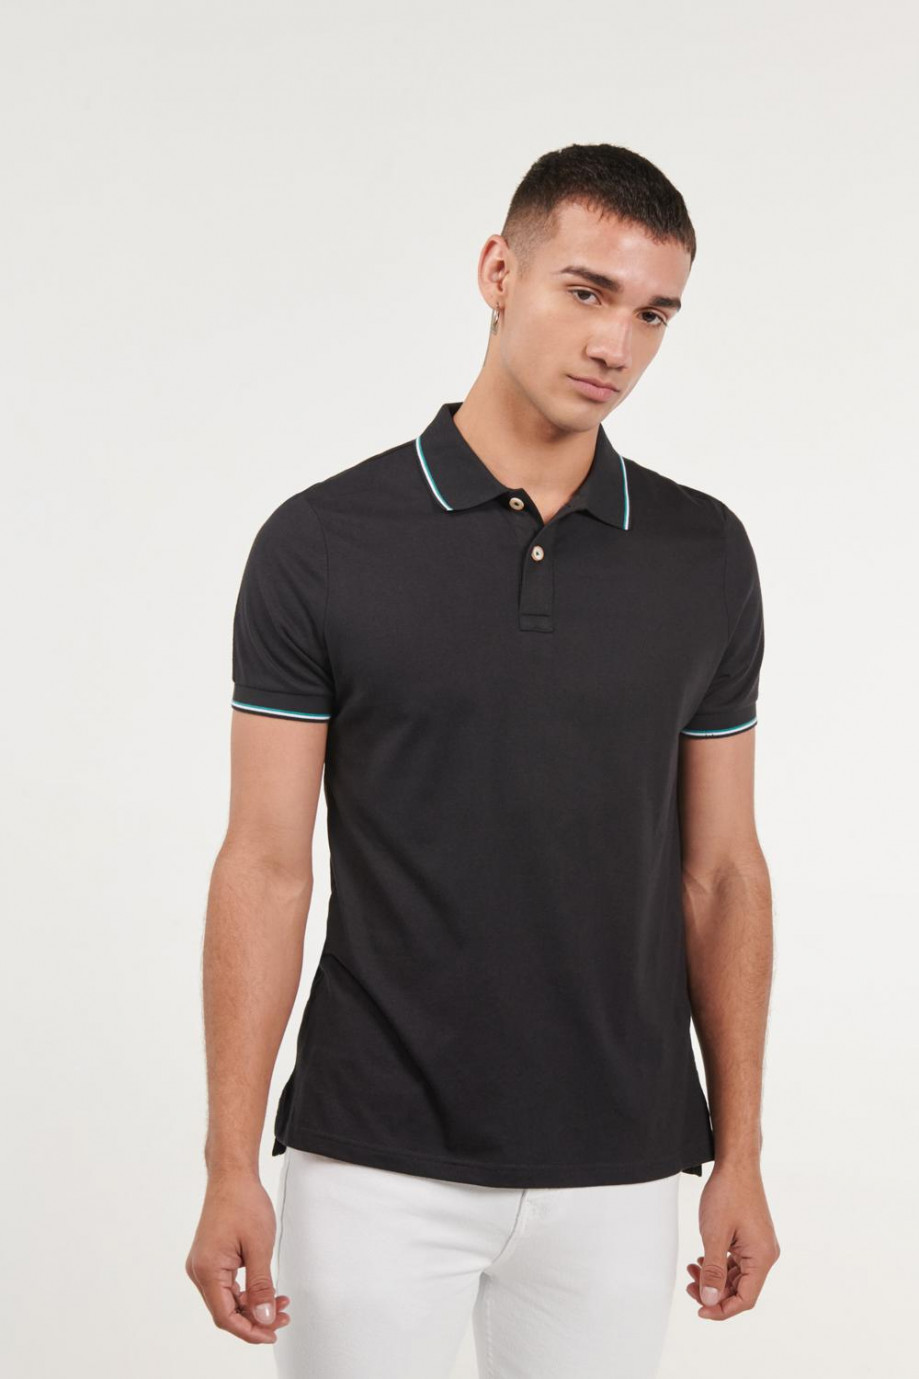 Camiseta negra polo con tejido de rayas azules en contraste